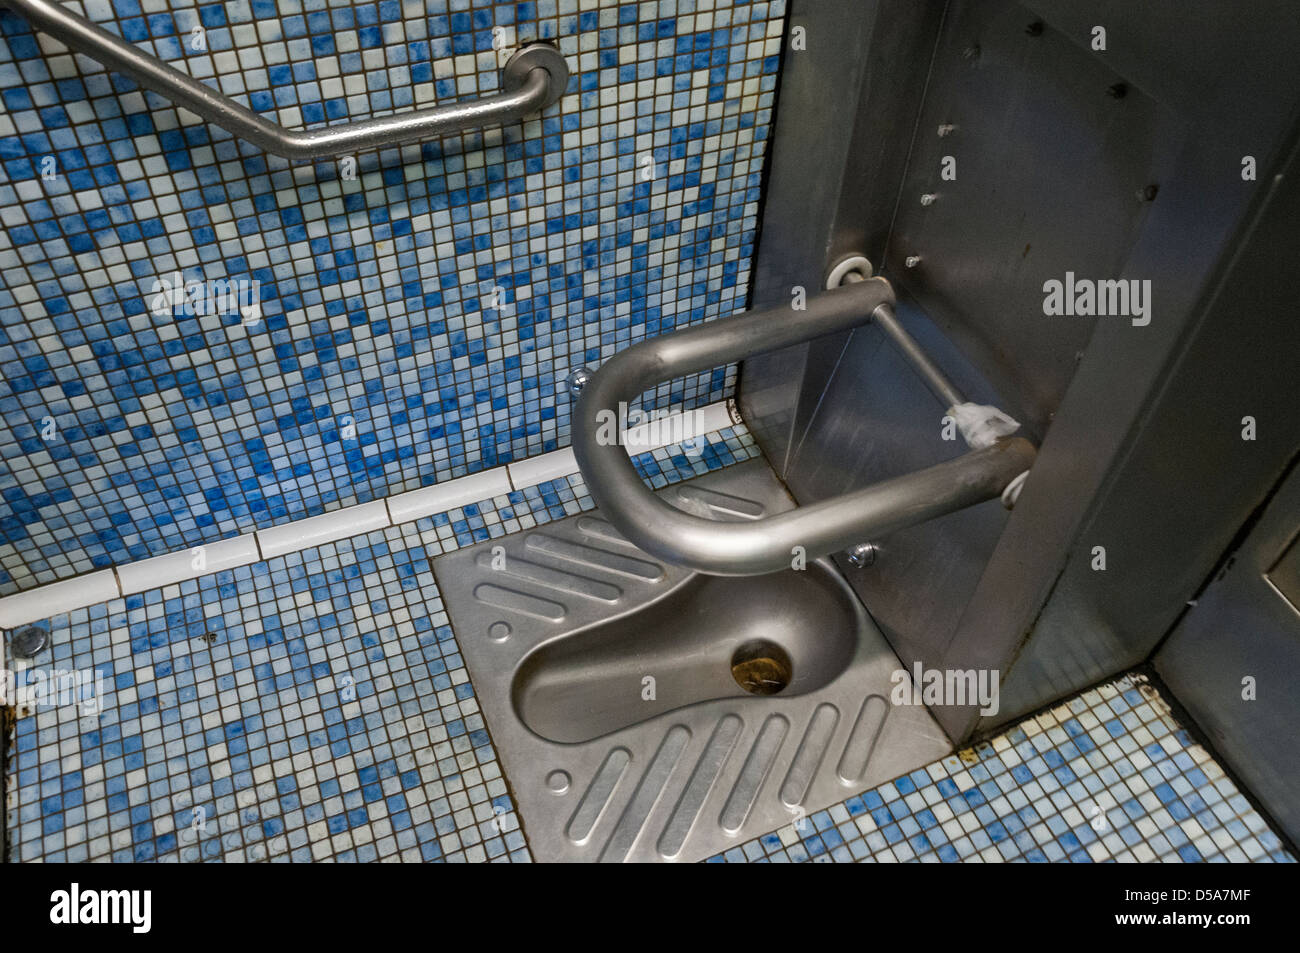 öffentliche Toilette Französisch Stockfotografie - Alamy